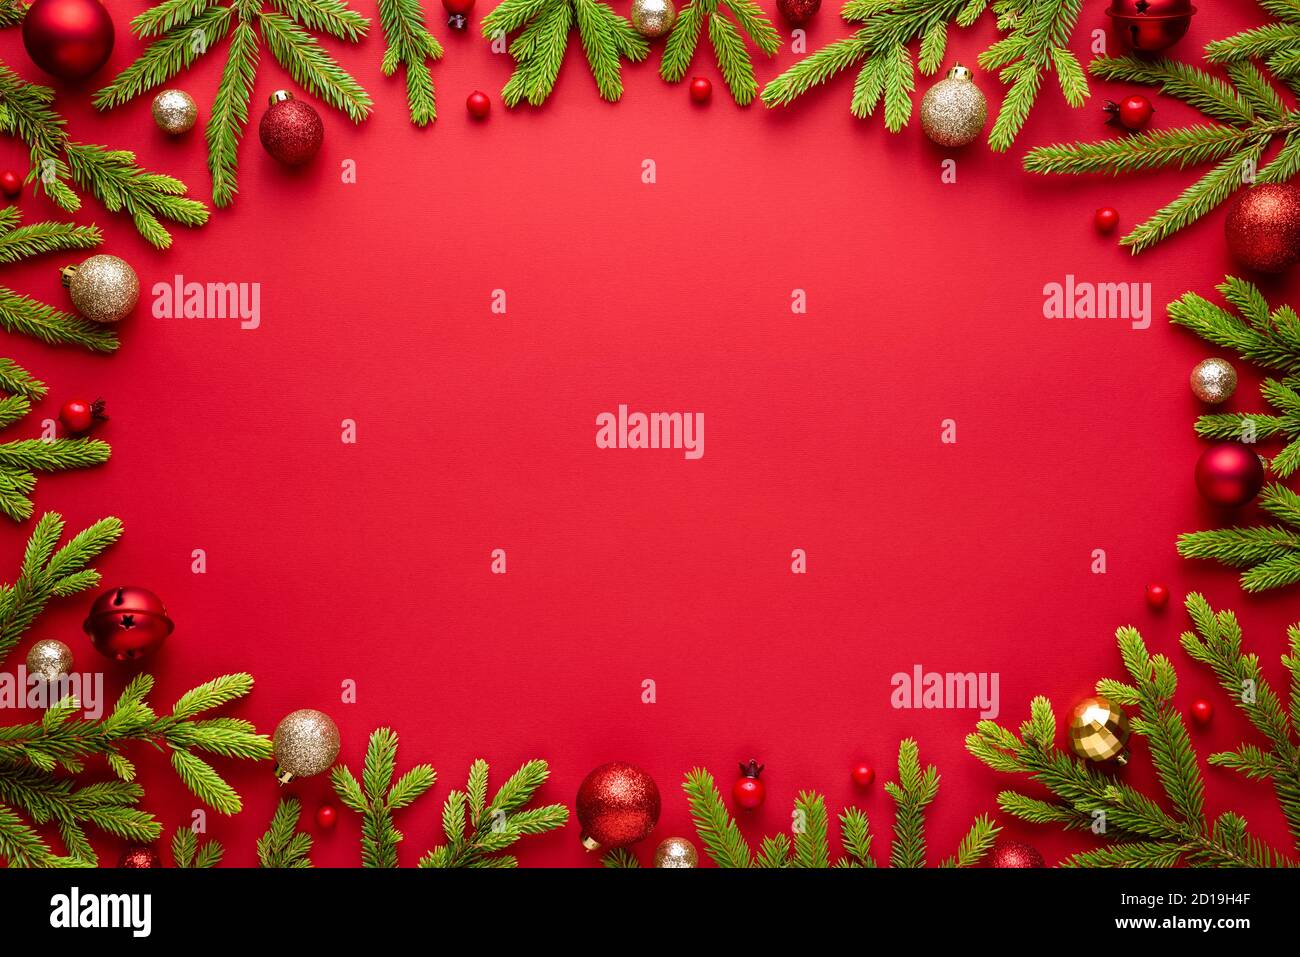 Fond rouge de noël avec cadre ovale. Bordure des fêtes de fin d'année avec espace pour les textes de fête. Vue de dessus, plan d'appartement Banque D'Images